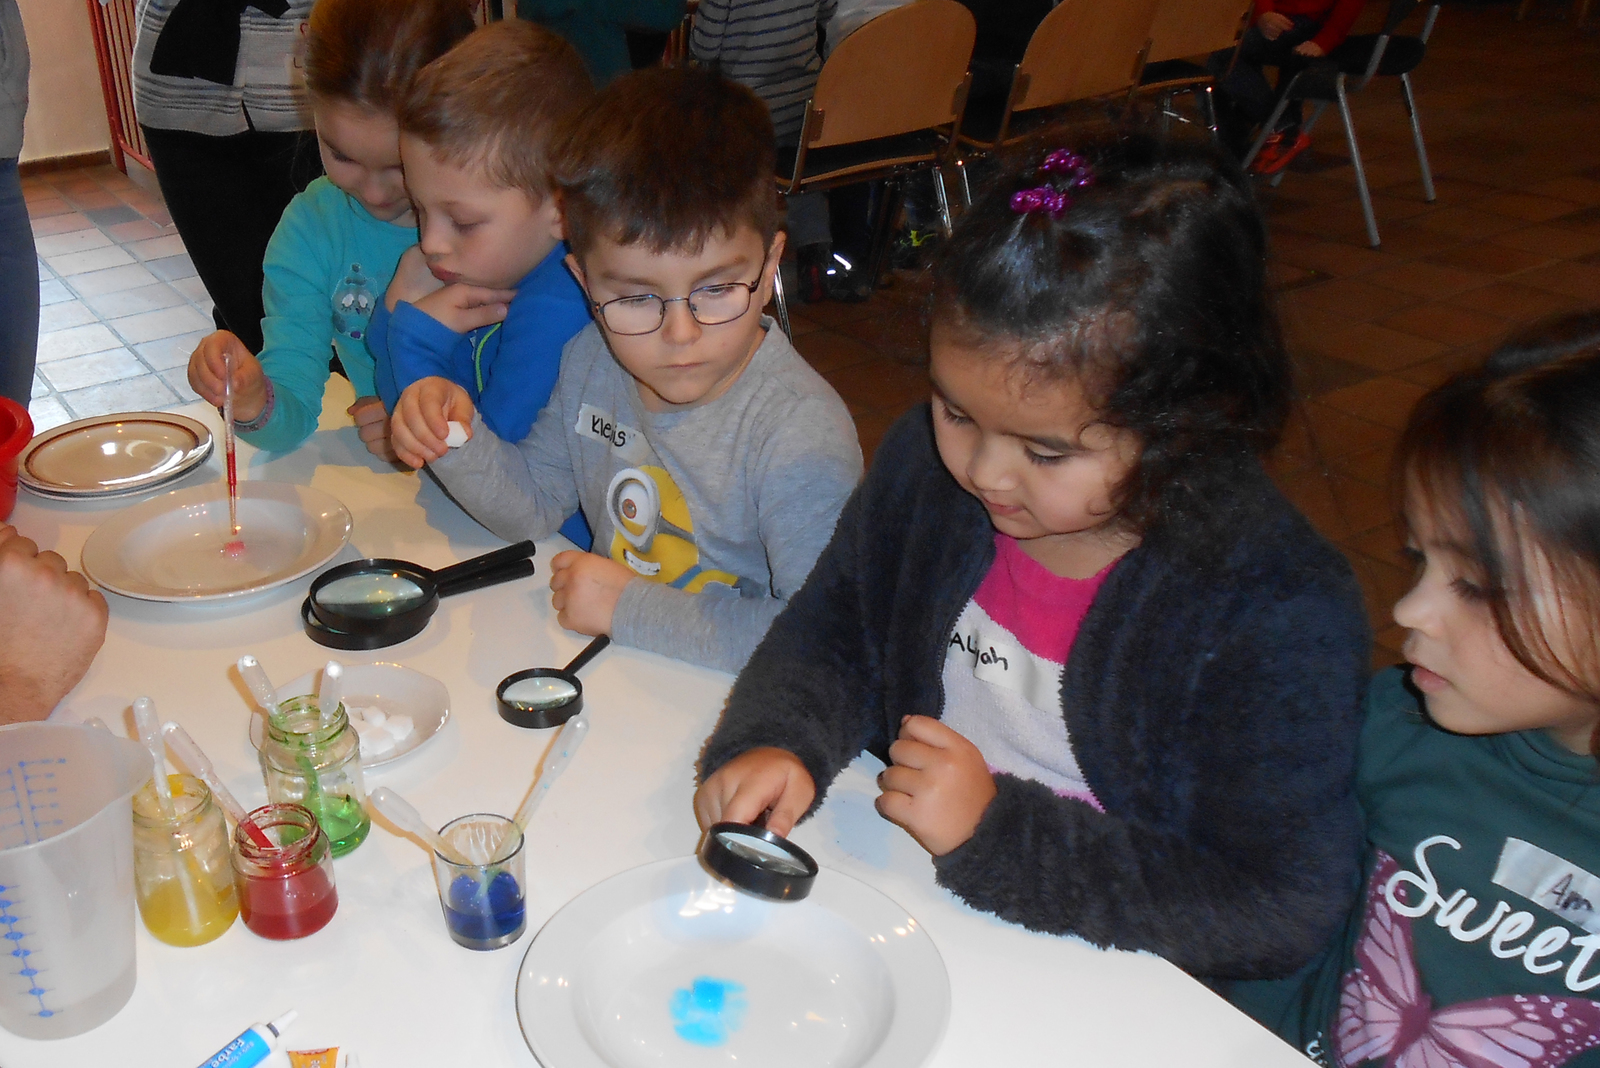 Mit Hilfe von Lupen beobachteten die Kinder an der Station „Zuckerbilder“ die Effekte, die durch mit Farben und Wasser beträufelte Zuckerwürfel entstehen.